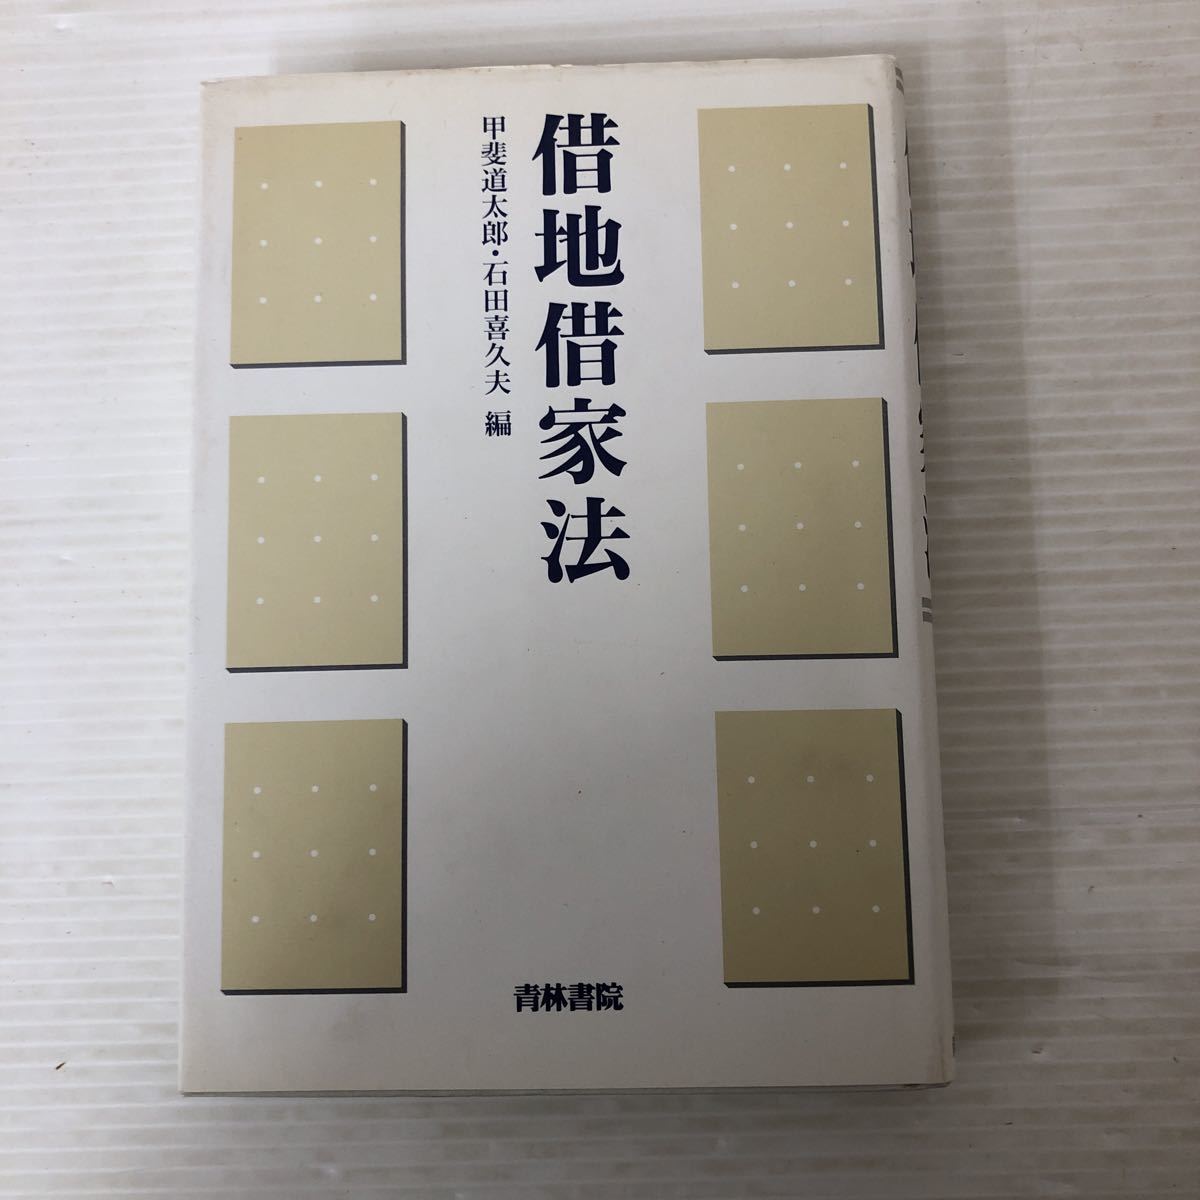 I-ш/ 借地借家法 編/甲斐道太郎・石田喜久夫 青林書院 1996年初版第1刷発行